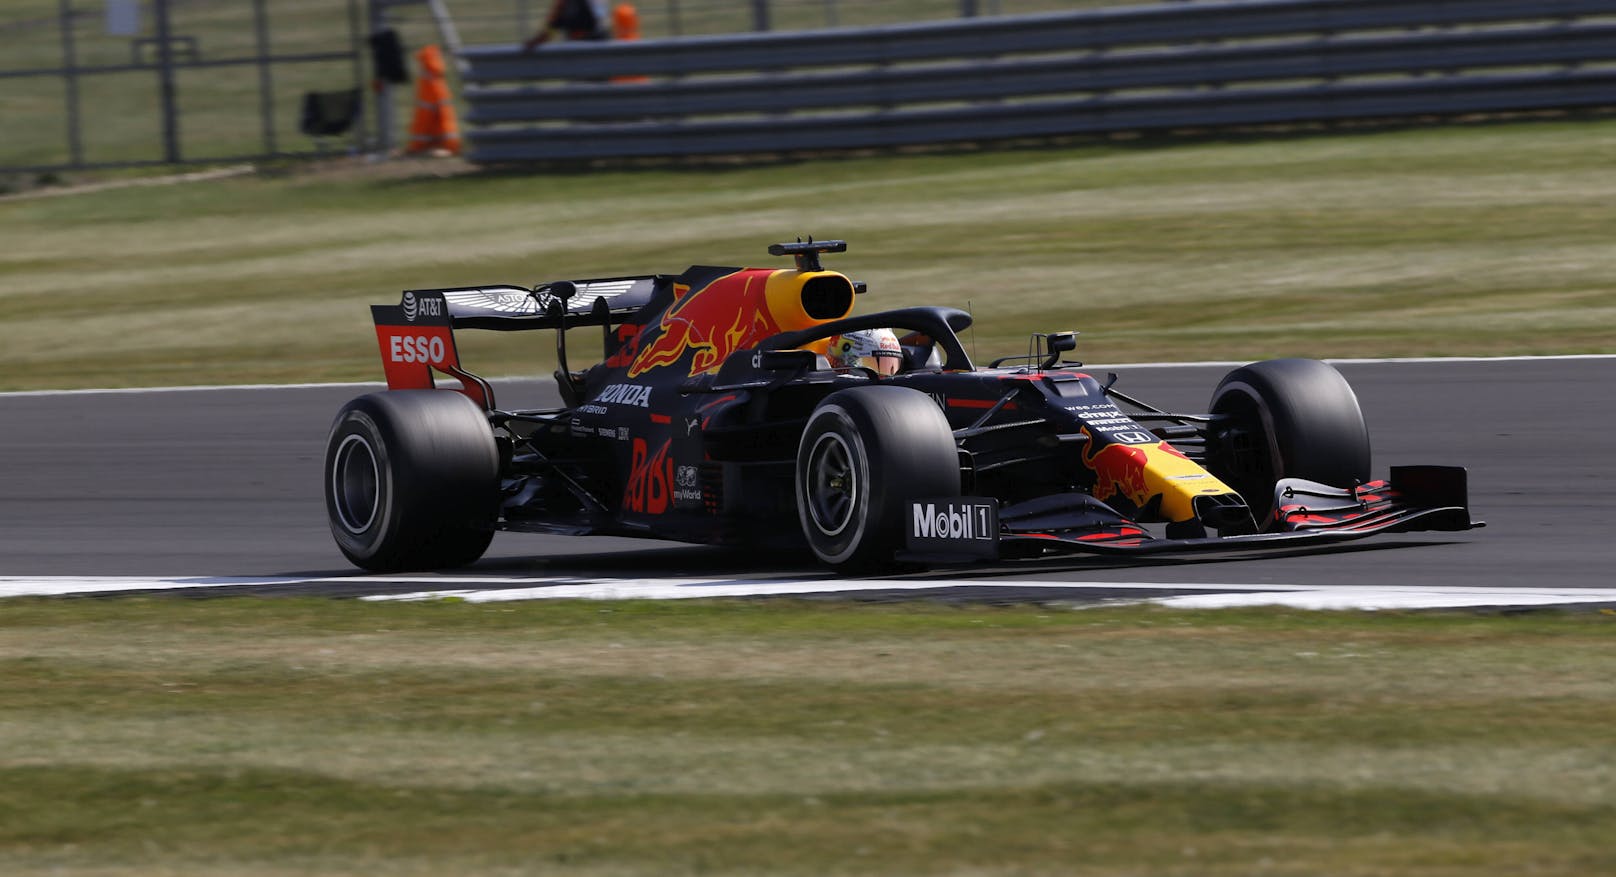 Den zweiten Platz nimmt Red Bull mit dem Honda-Motor ein - immerhin auch 994 PS